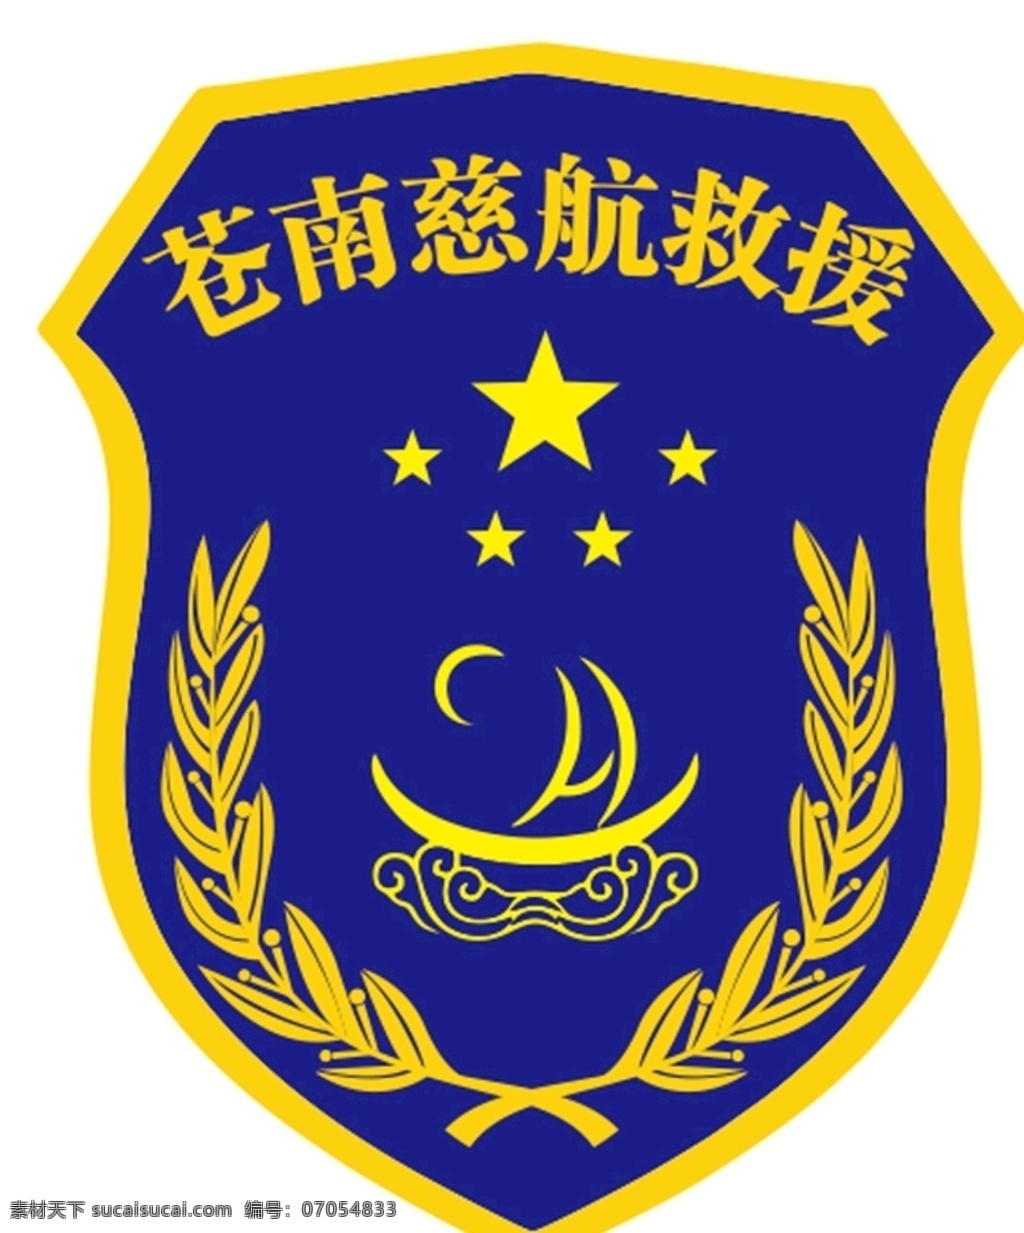 苍南慈航救援 蓝色logo 徽章 月亮 星星logo 企业logo 学校logo logo设计